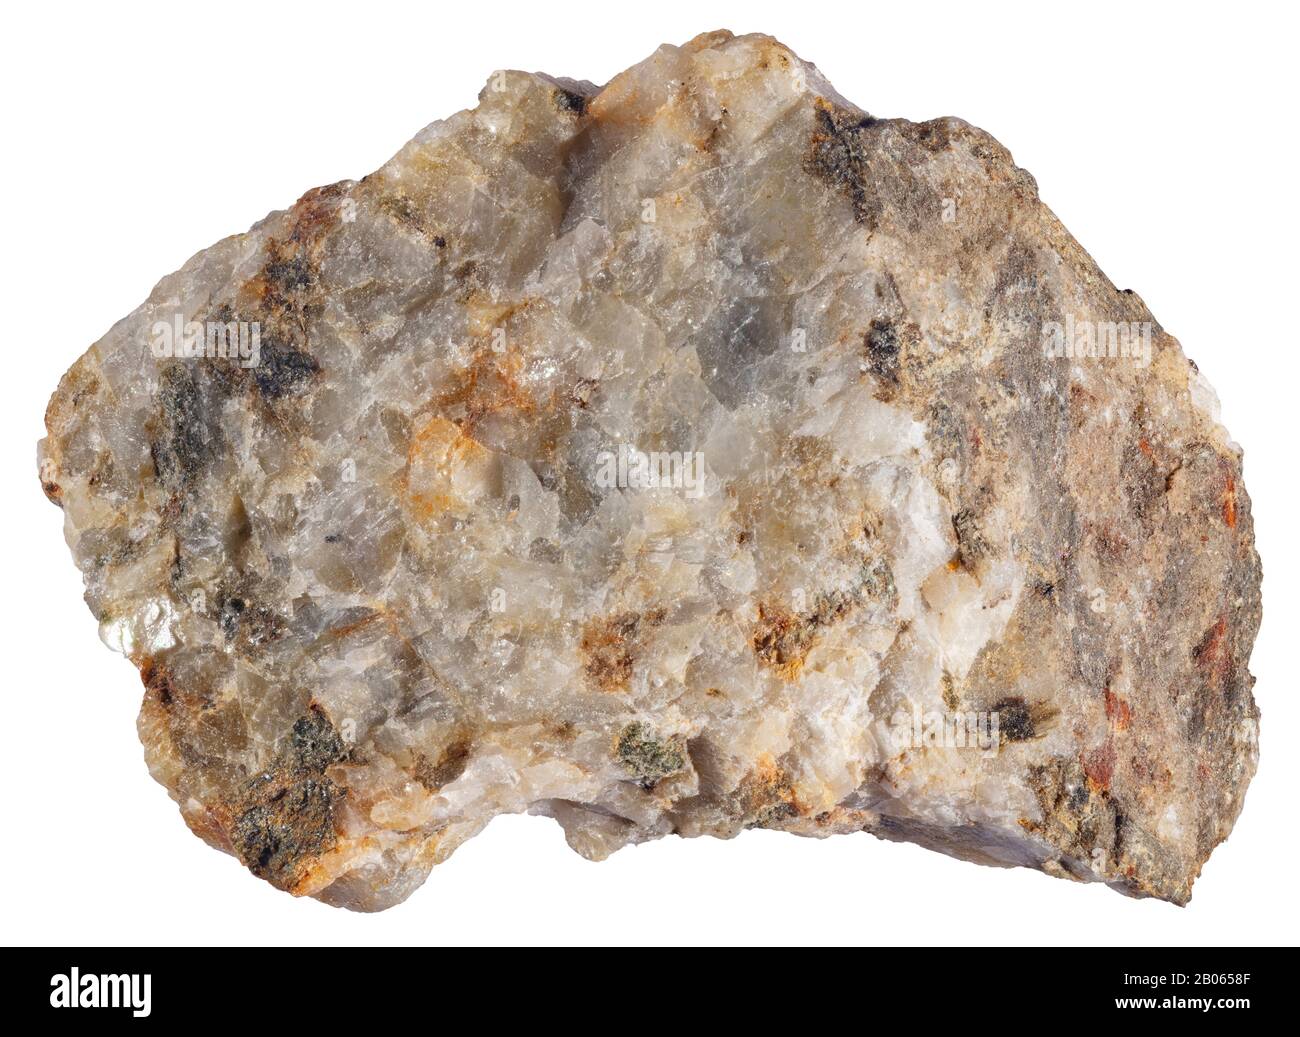 Calc-silicate, Métamorphisme de contact, Grenville (Québec) une roche calc–silicate est une roche produite par altération métasomatique. Banque D'Images